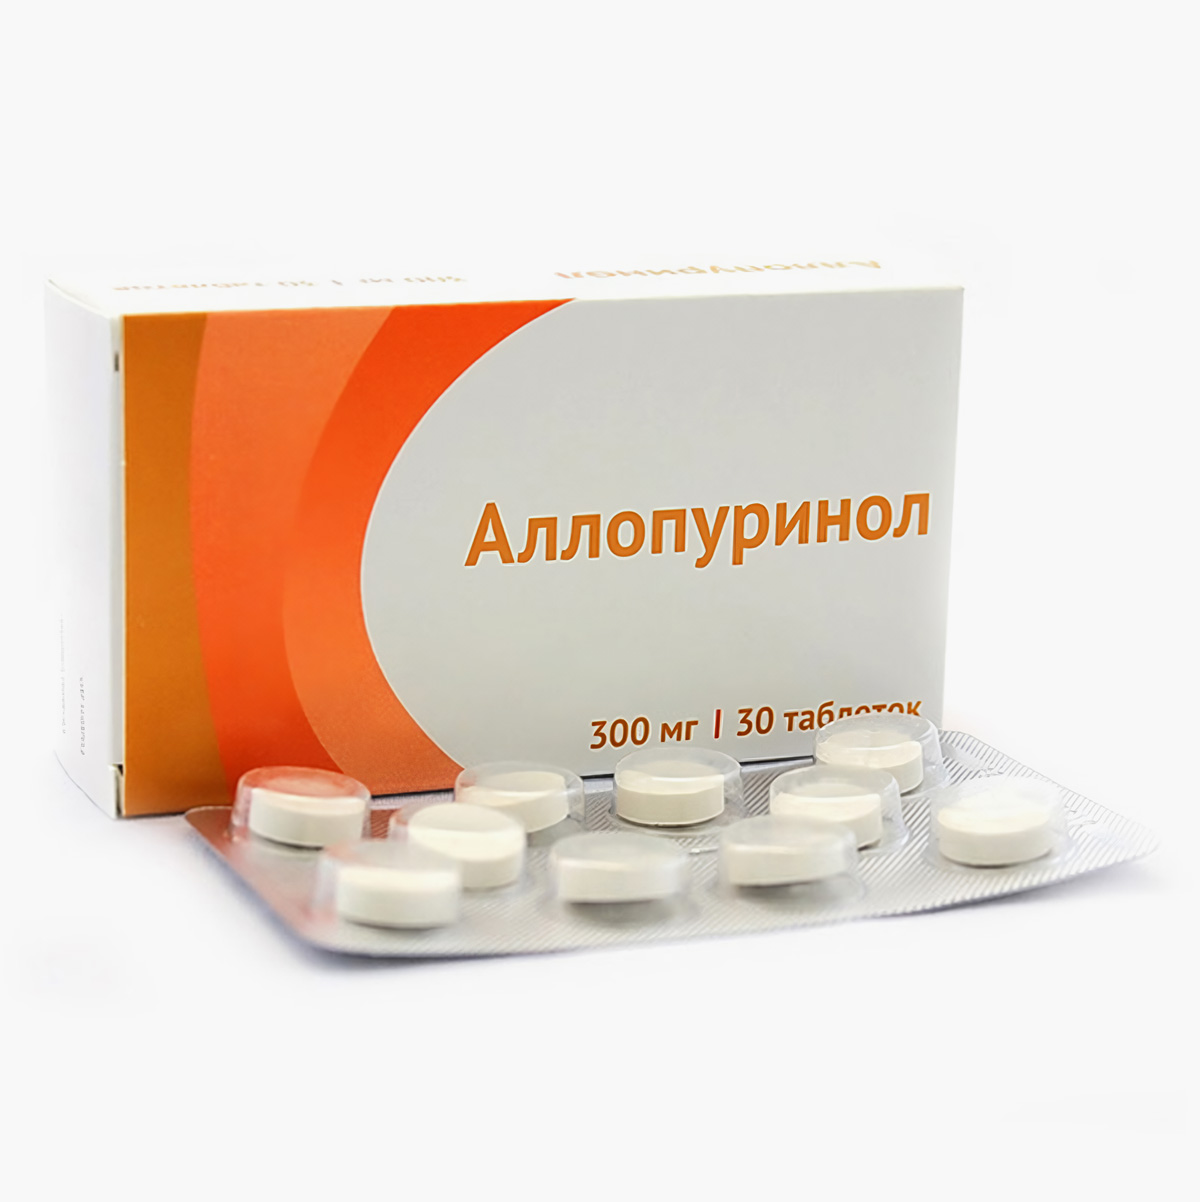 Дженерик «Аллопуринол», таблетки 300 мг. Разница в цене за упаковку — около 40 ₽. Источник: aptekamos.ru